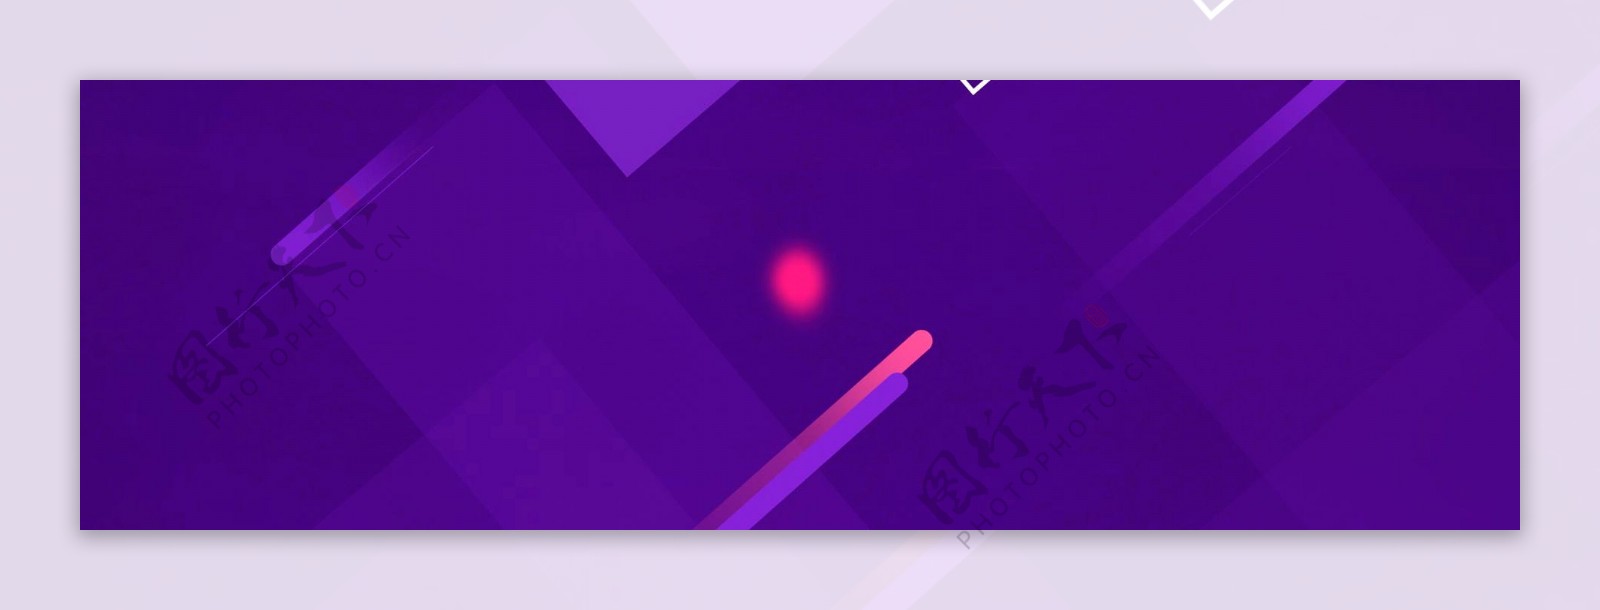 简约紫色方块banner背景素材